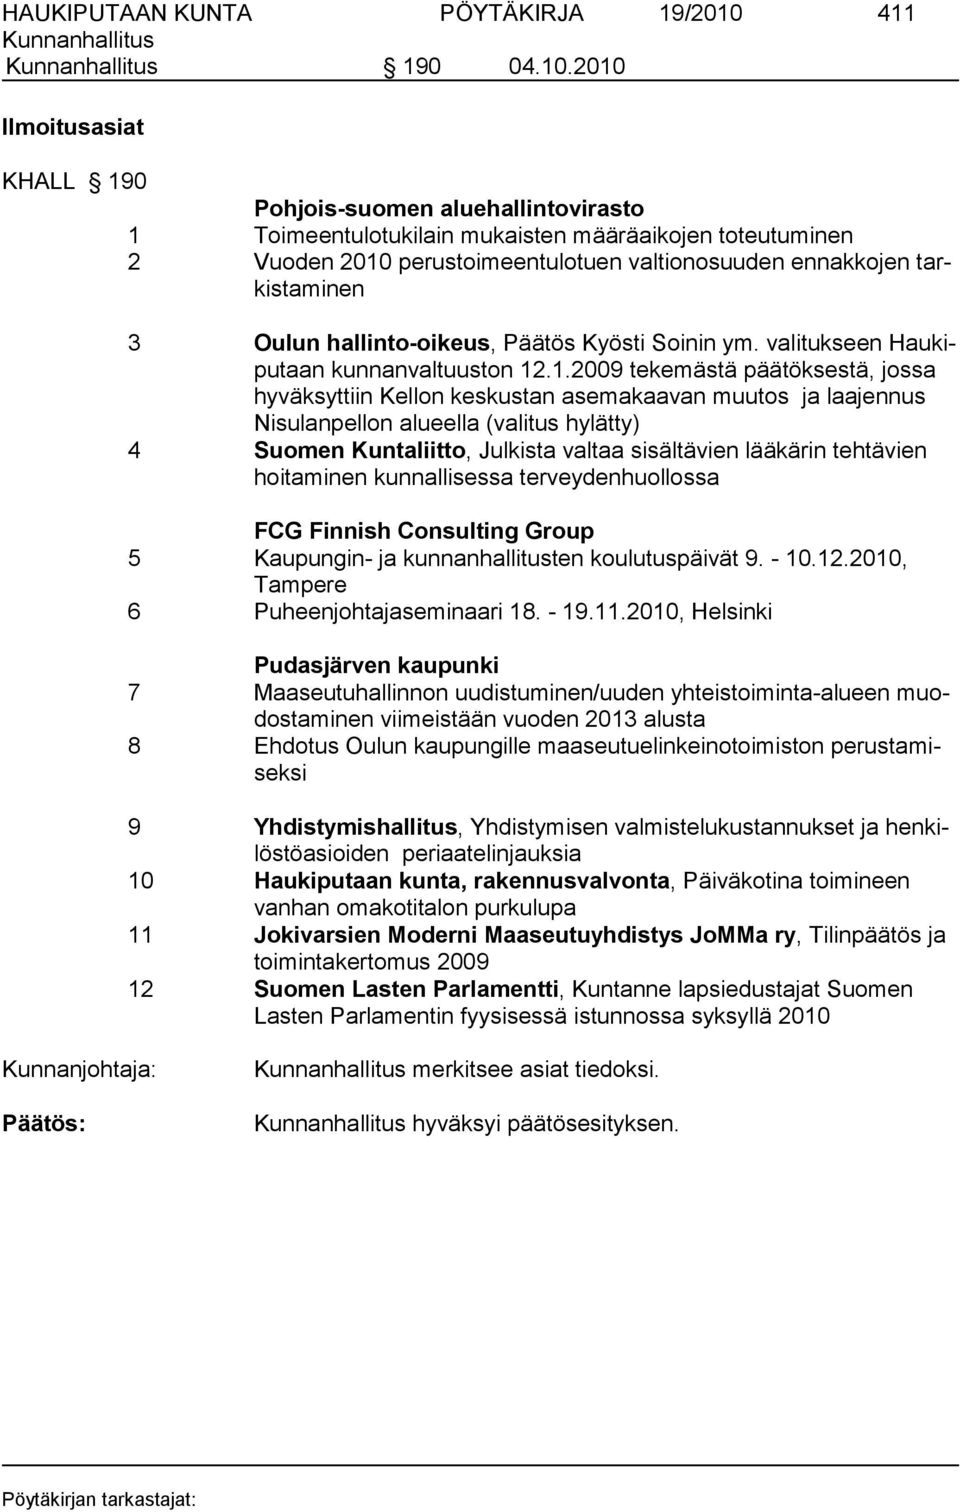 2010 Ilmoitusasiat KHALL 190 Pohjois-suomen aluehallintovirasto 1 Toimeentulotukilain mukaisten määräaikojen toteutuminen 2 Vuoden 2010 perustoimeentulotuen valtionosuuden ennakkojen tarkistaminen 3